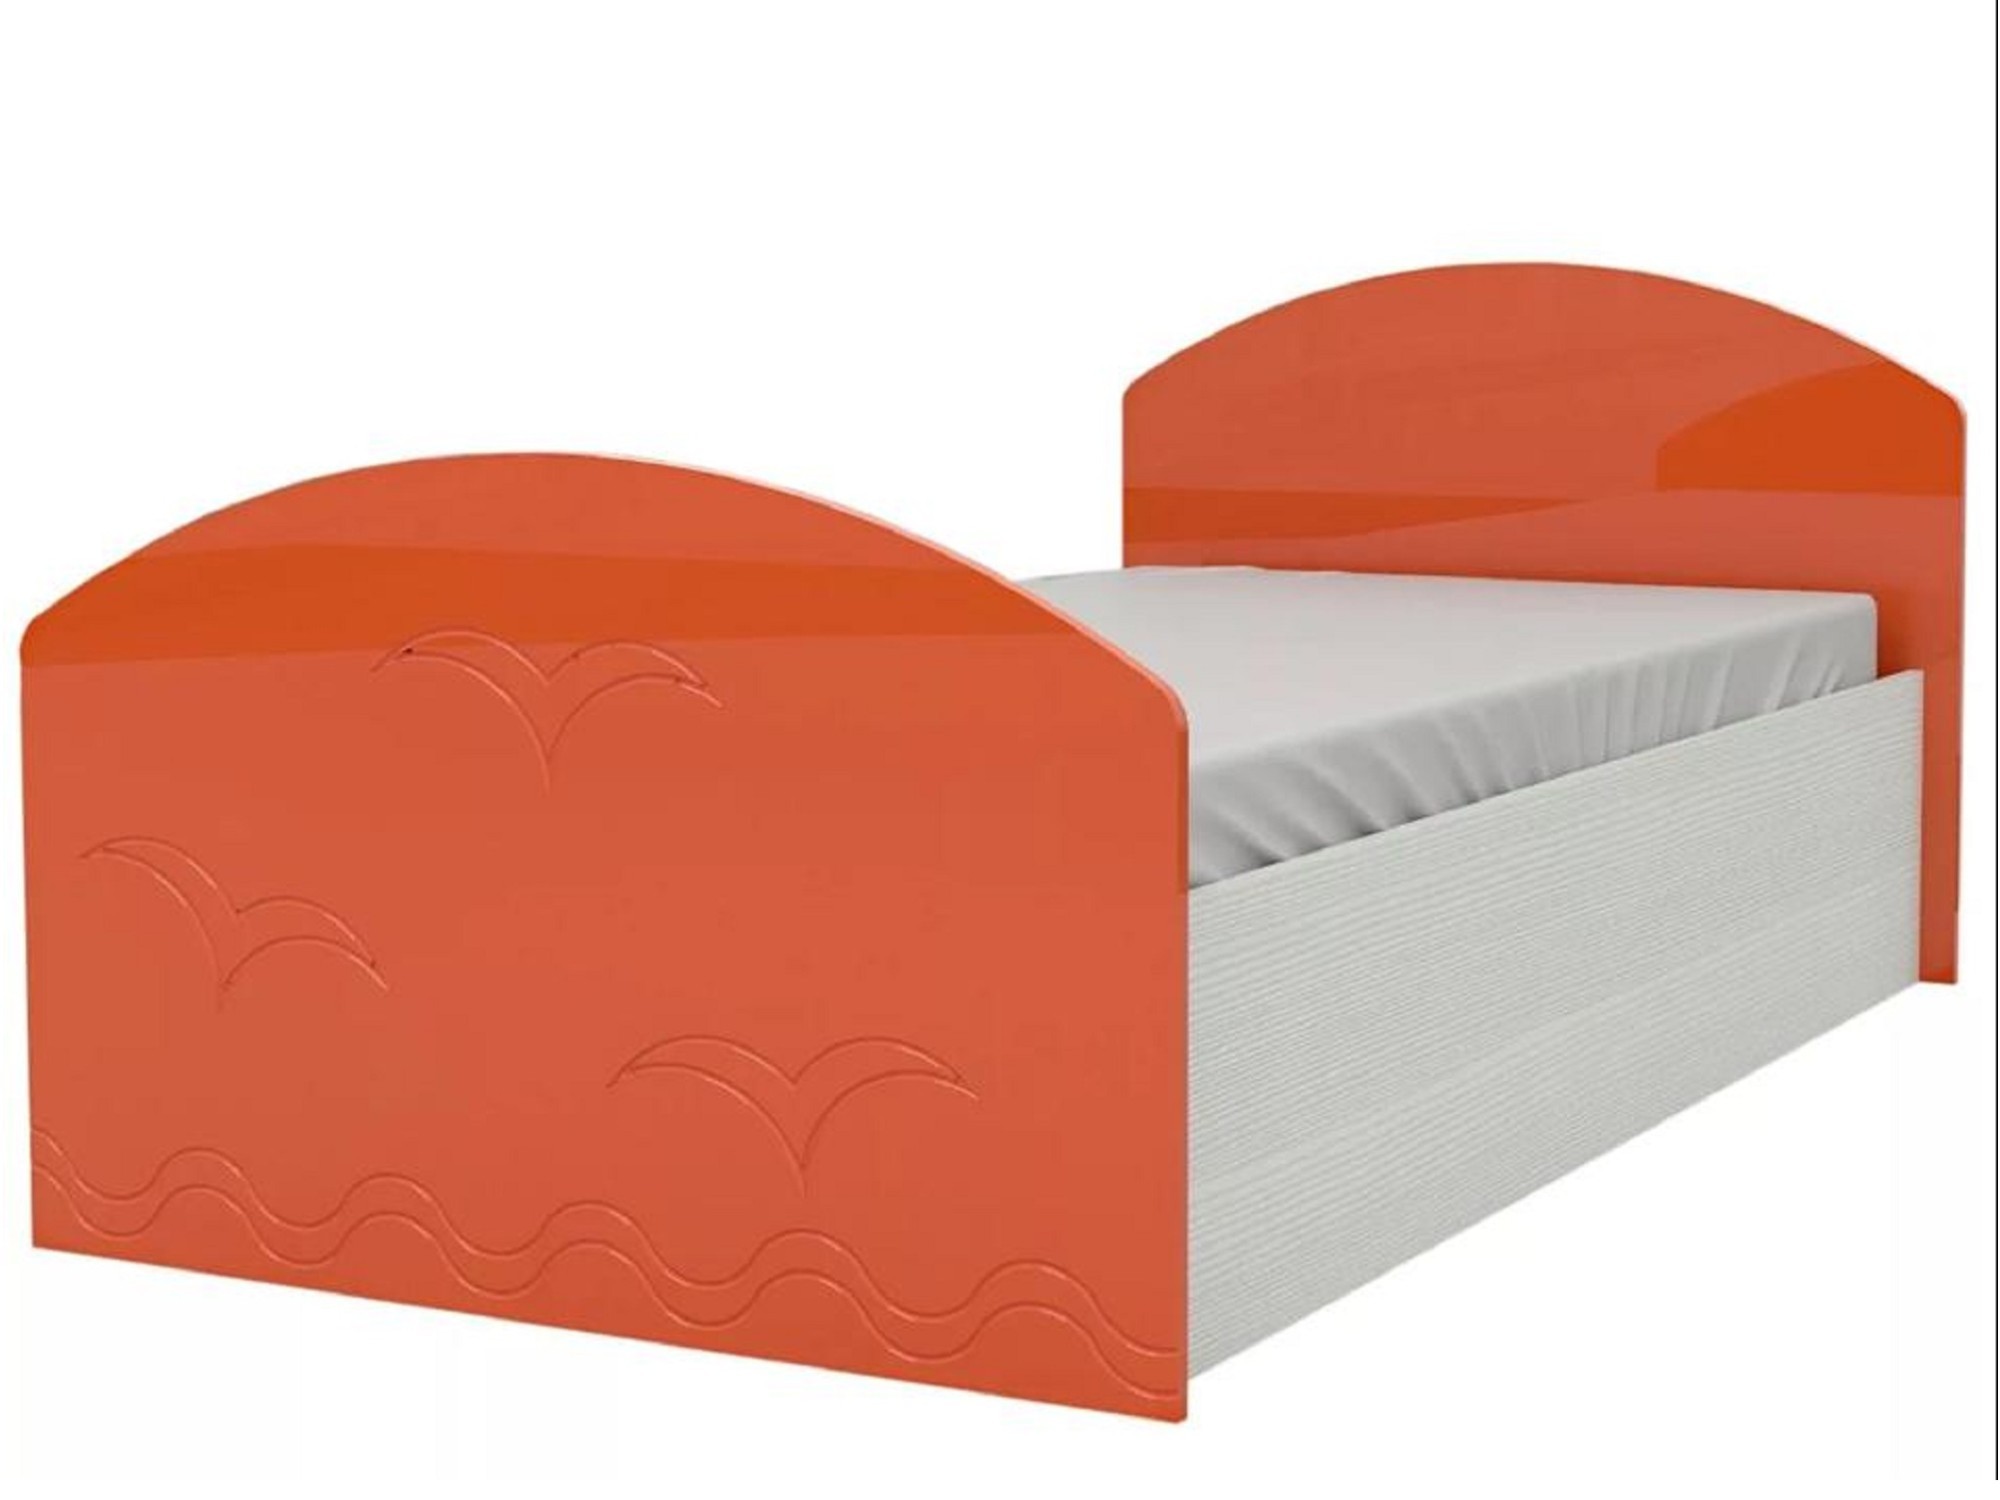 Юниор-2 Детская кровать 80, металлик (Оранжевый металлик, Дуб белёный) Дуб белёный, МДФ, ЛДСП юниор 1 двухъярусная кровать 80 бирюза металлик дуб белёный зеленый лдсп